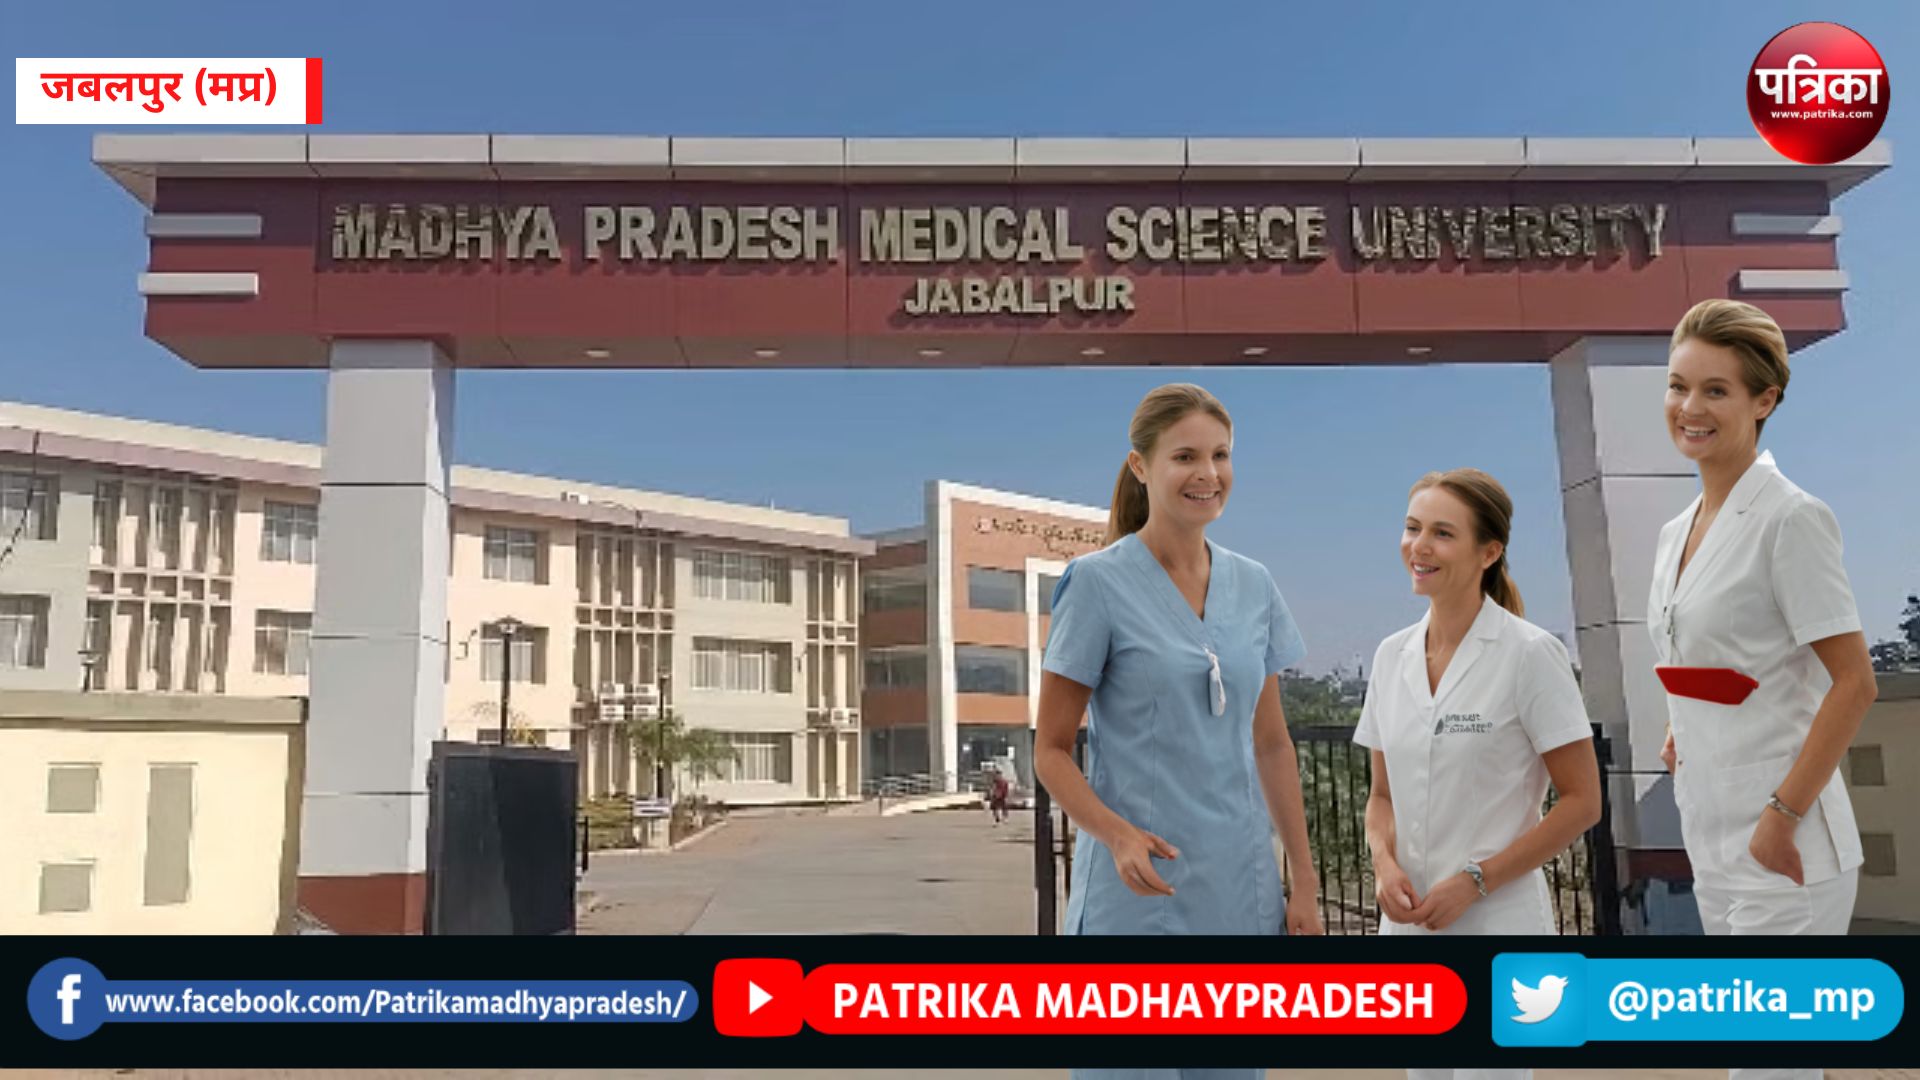 MedicalUniversity : जबलपुर में नर्सिंग और पैरामेडिकल के एक्सीलेंस स्कूल खोलेगी
मेडिकल यूनिवर्सिटी